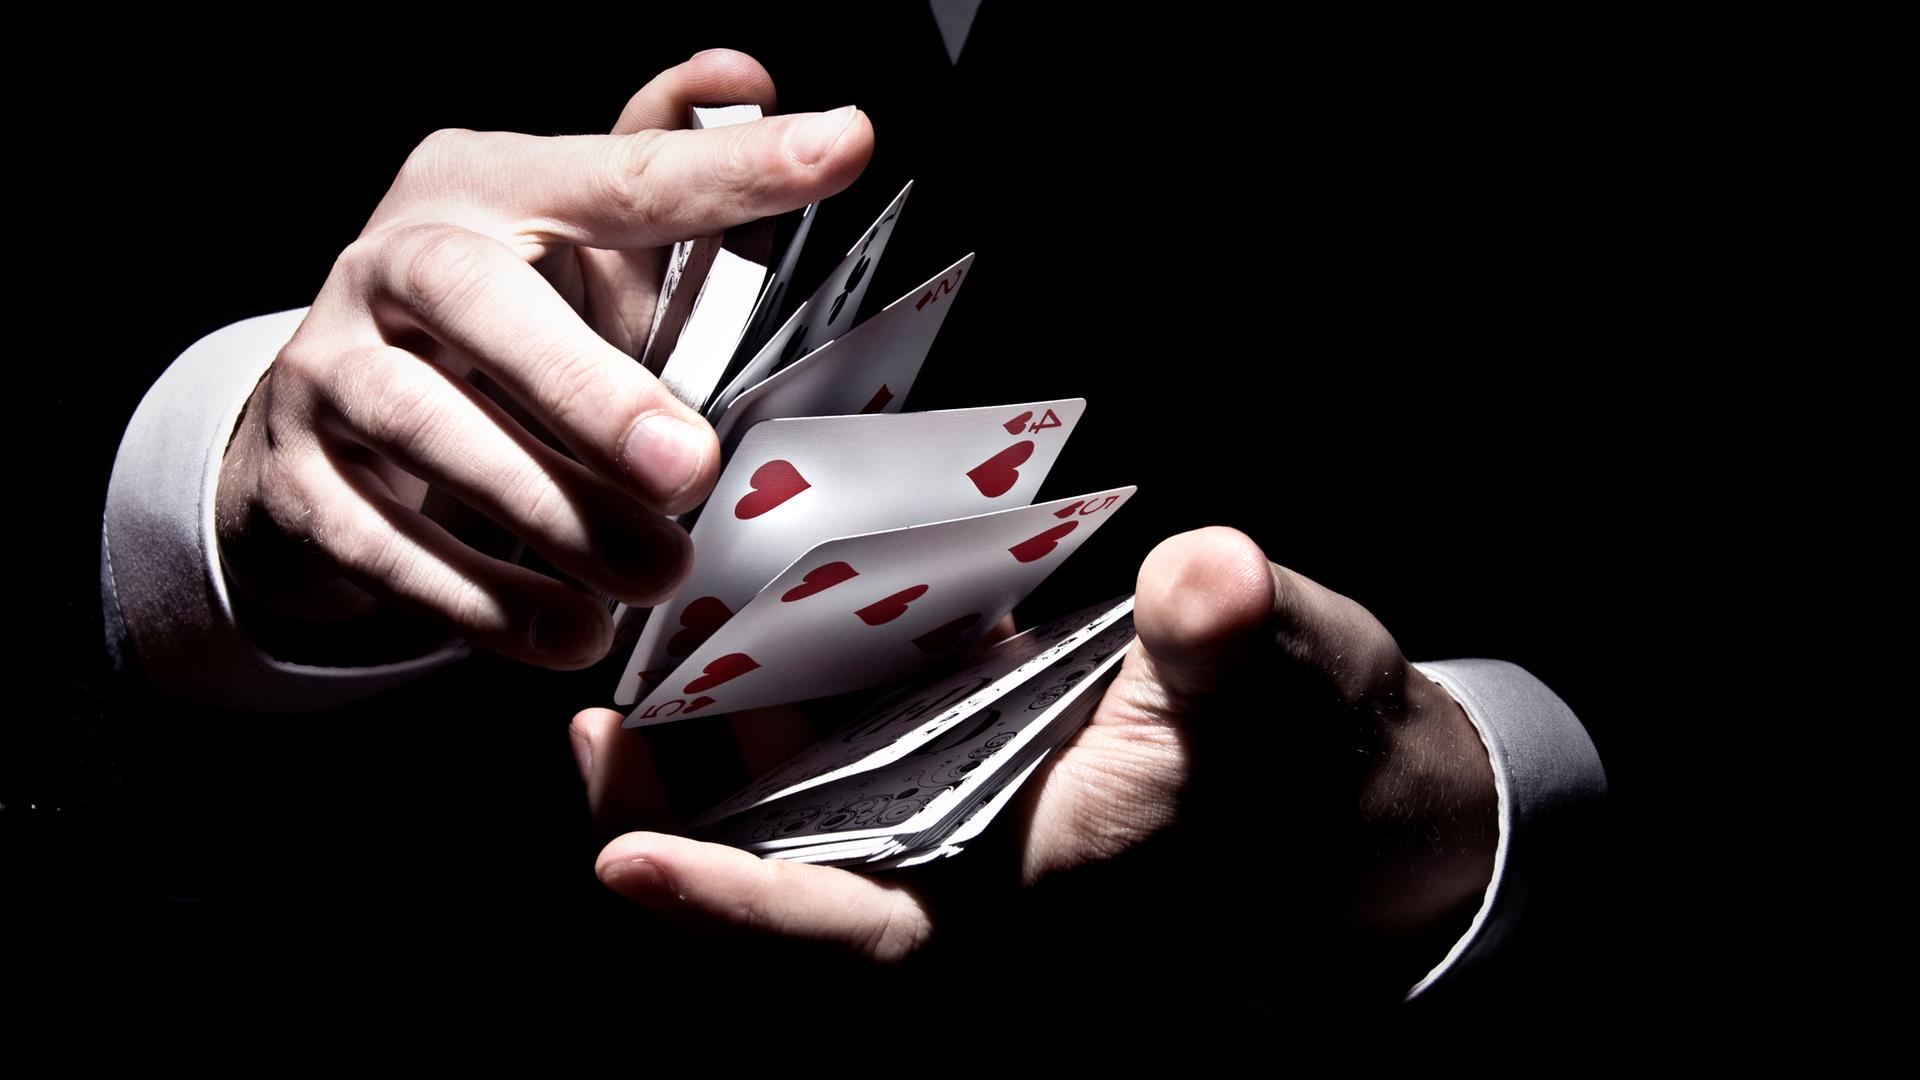 Kartentrick eines Zauberers. Zwischen zwei Händen fliegen Karten eines Kartenspiels